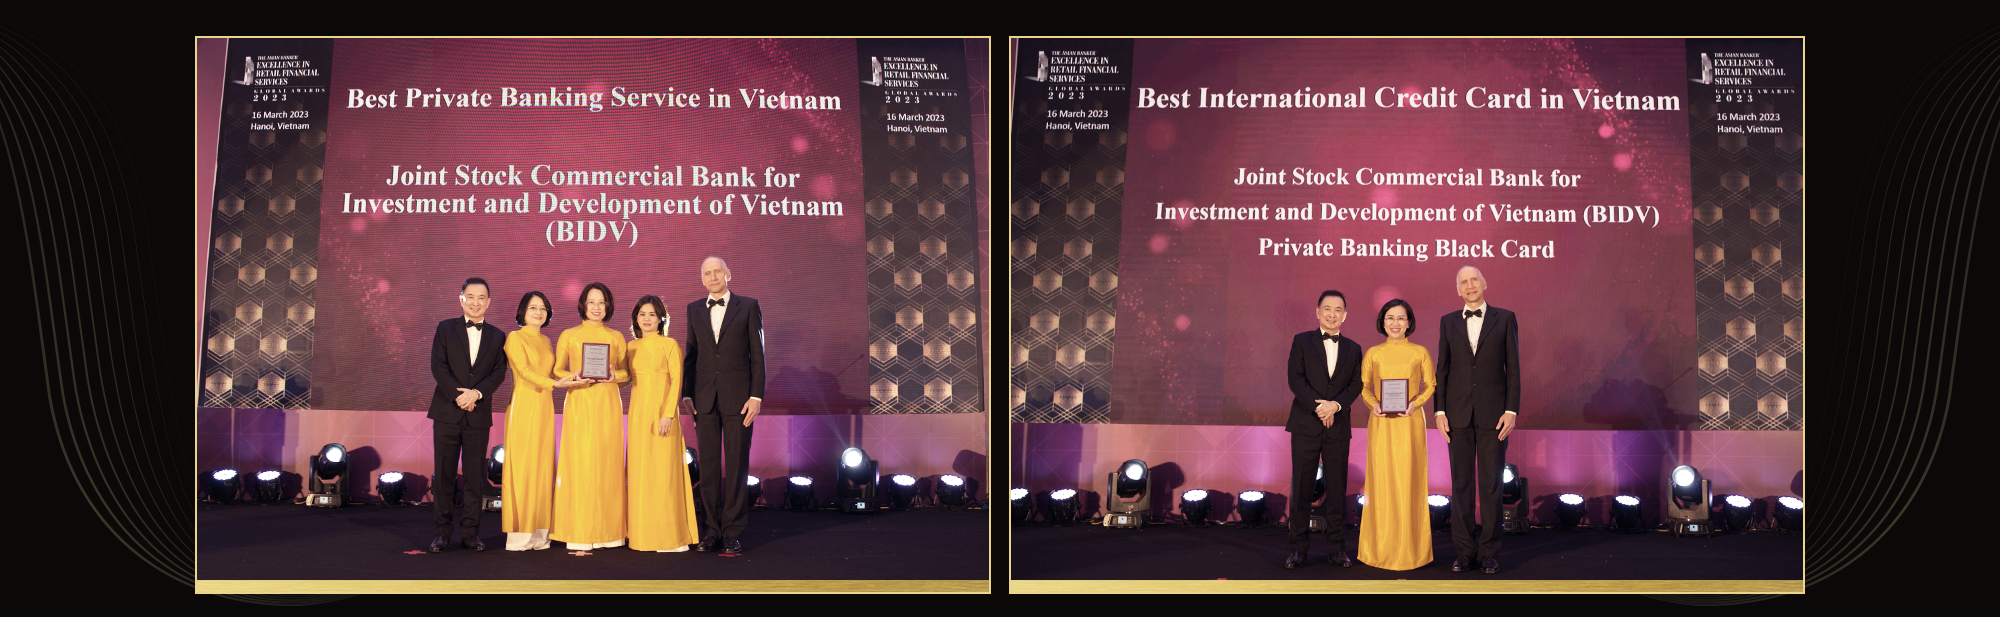 Có gì đặc biệt trong dịch vụ cho giới siêu giàu ở nhà băng vừa được nhận Giải thưởng “Best Private Banking Services in Vietnam”? - Ảnh 1.